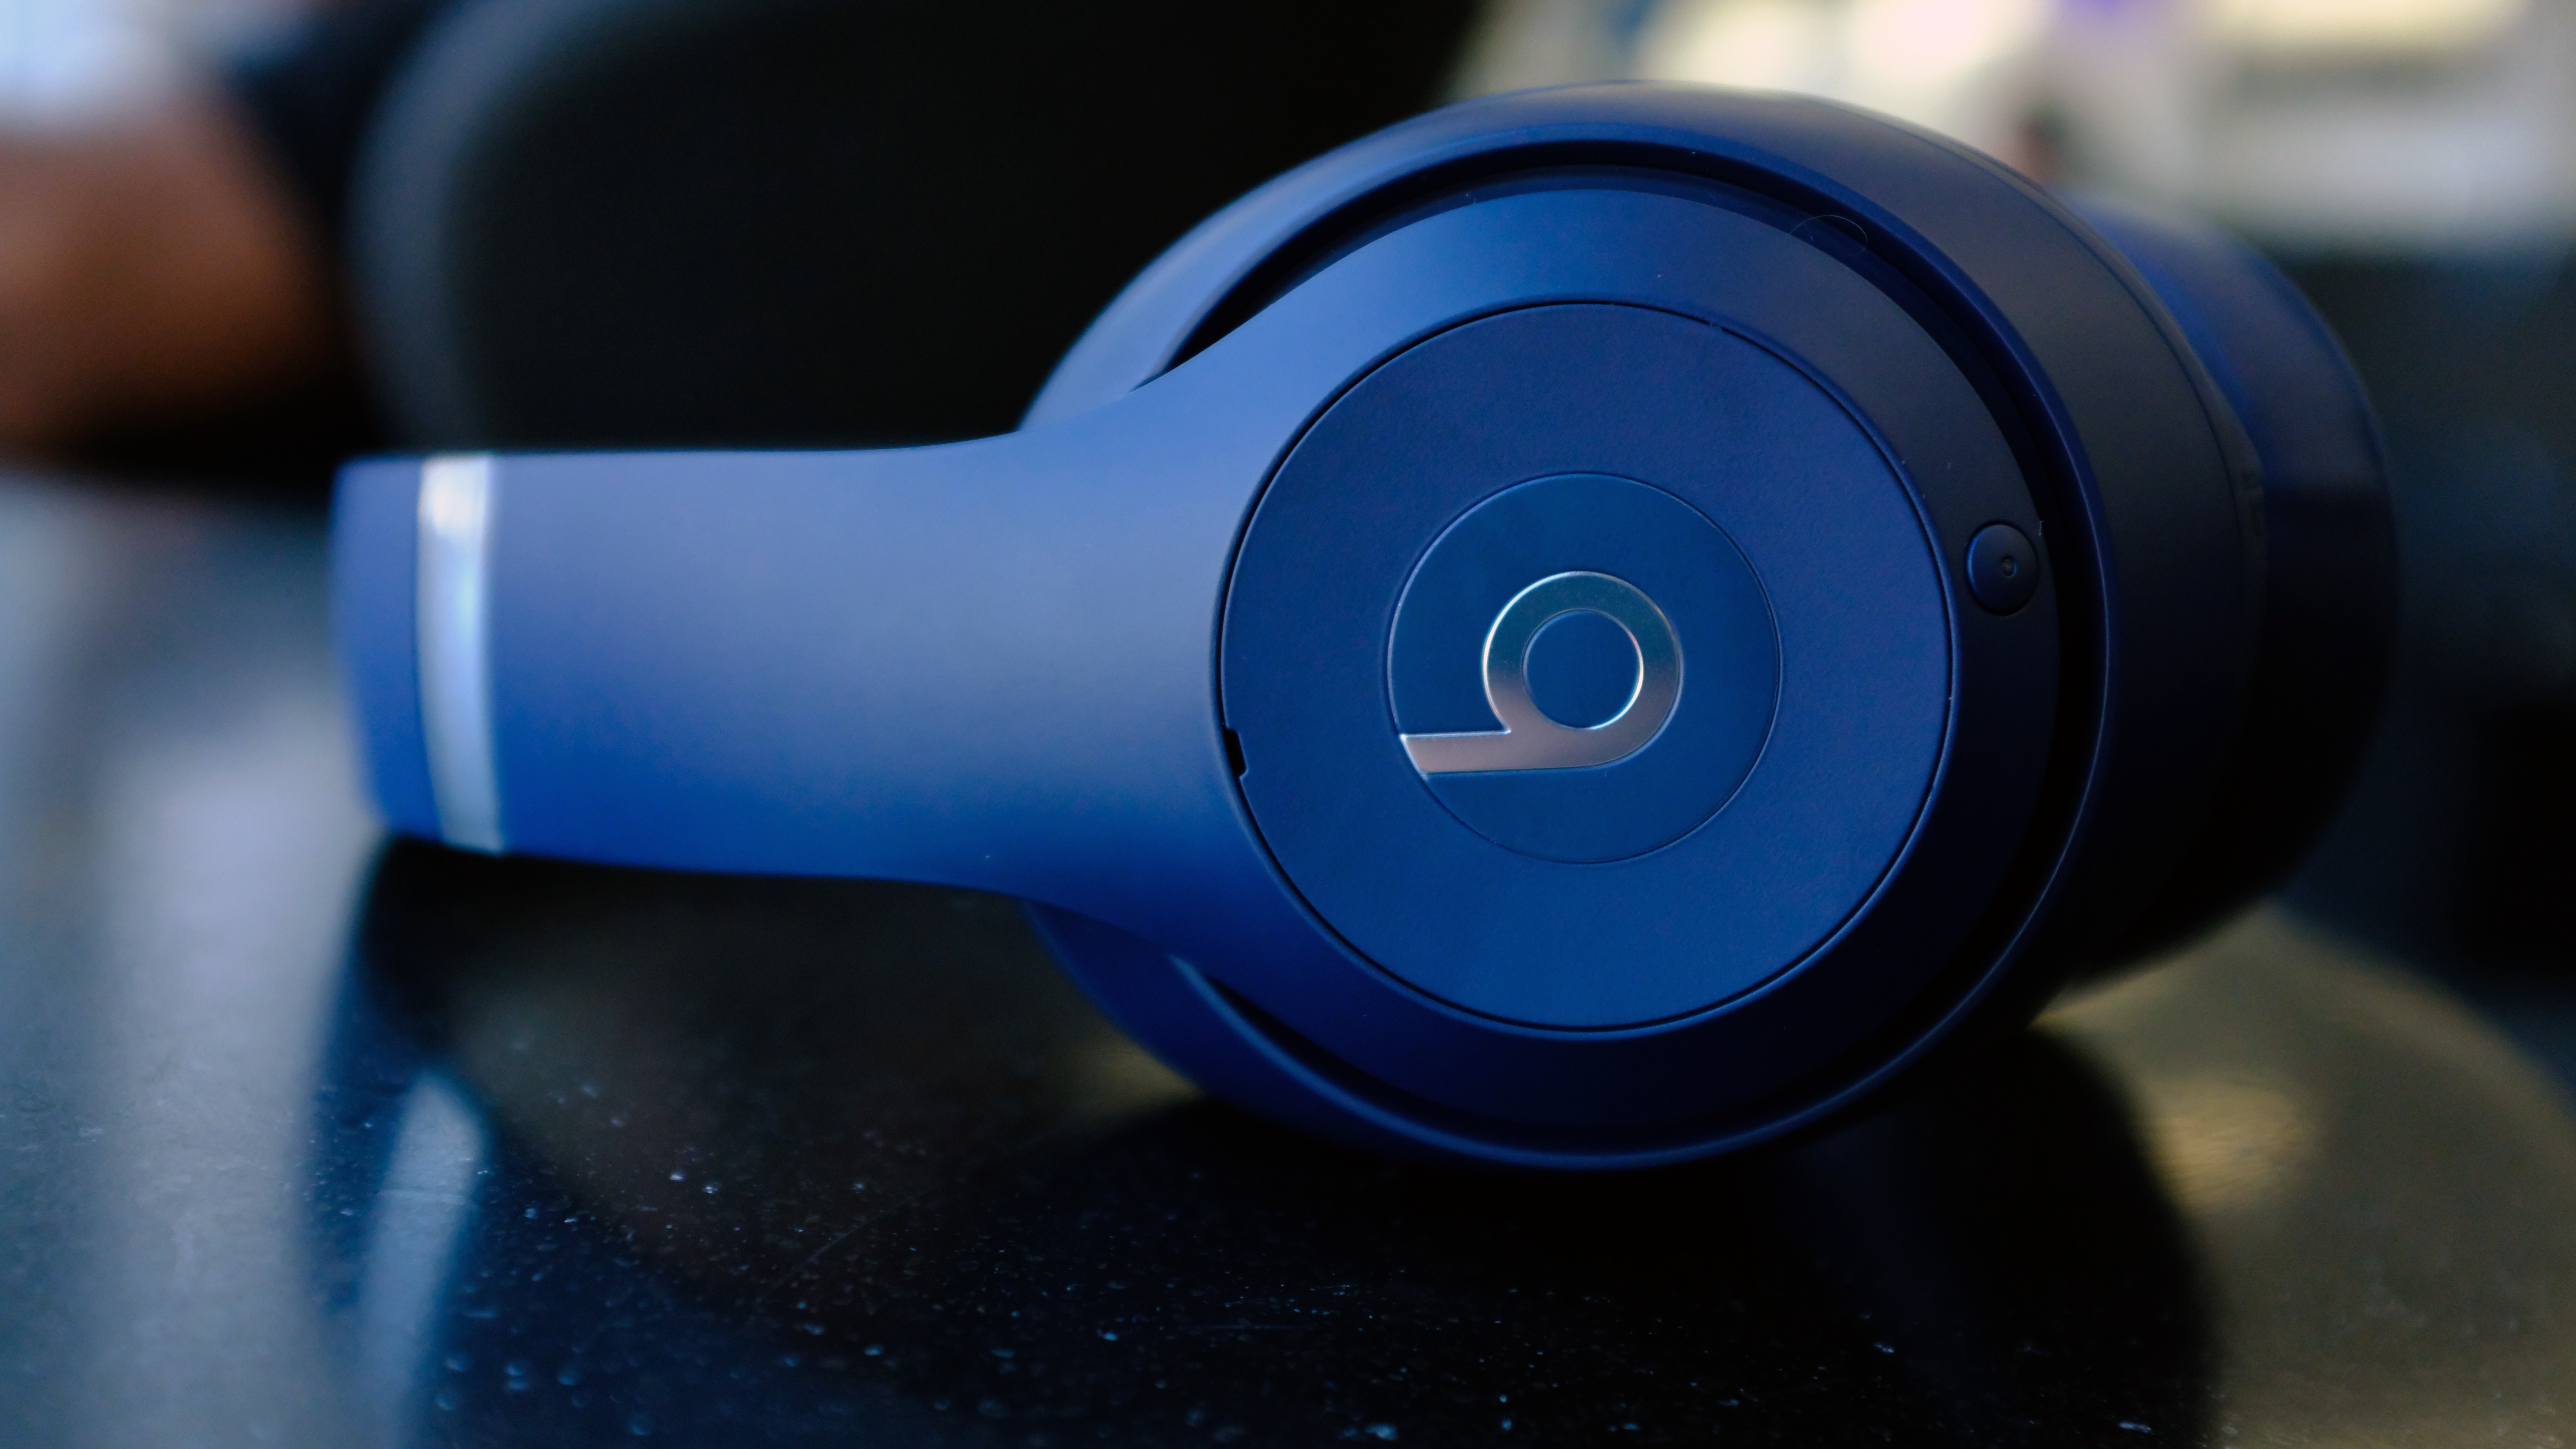 beats studio 3 wireless headphones blue